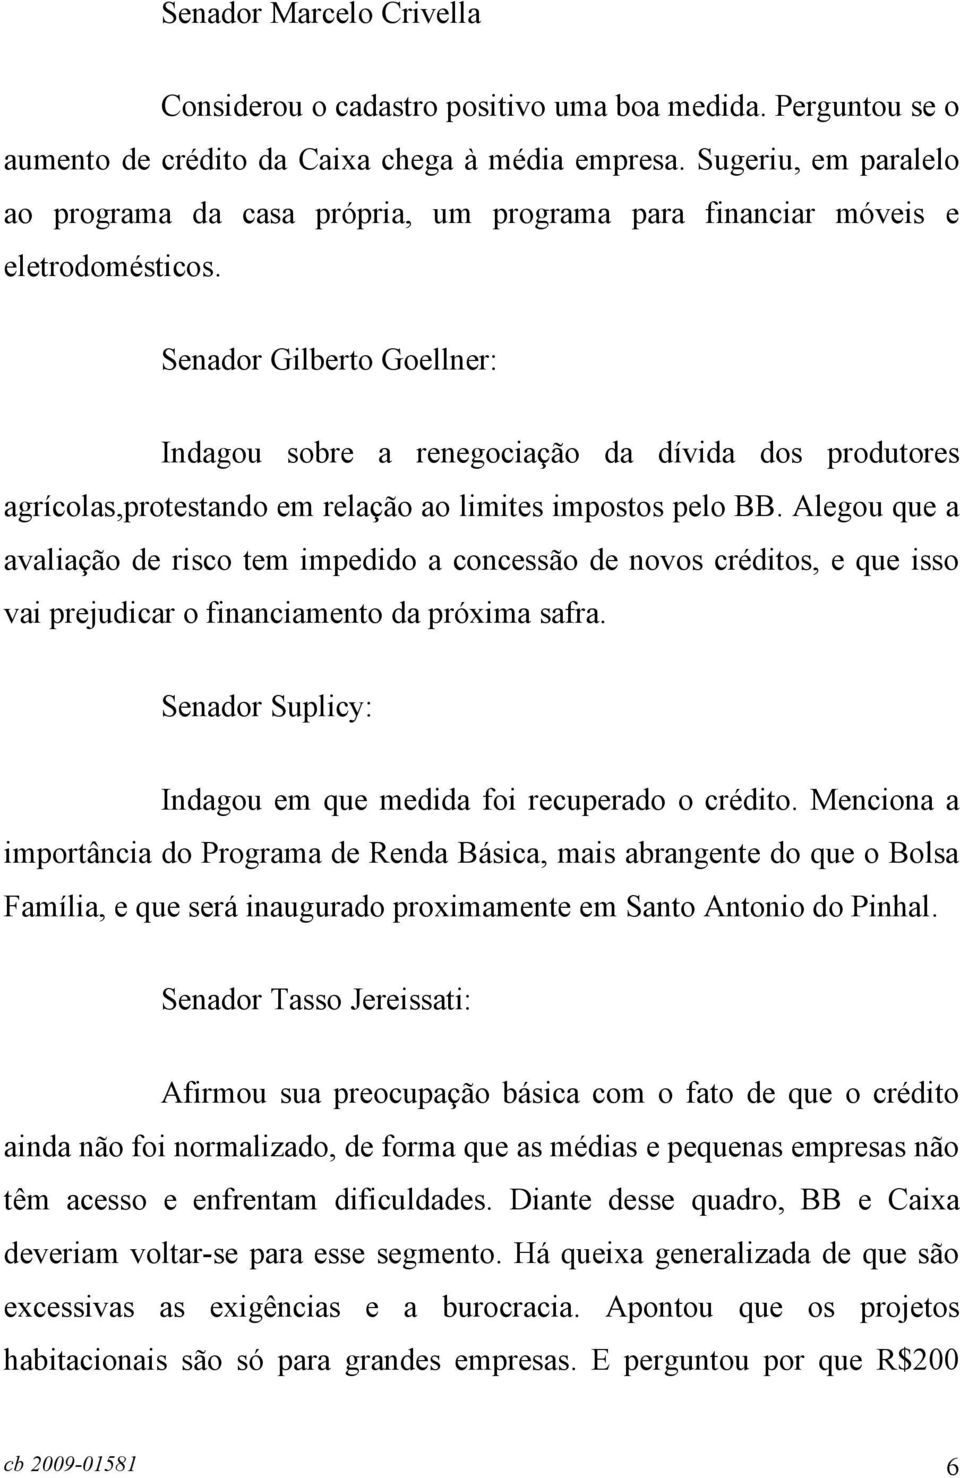 Senador Gilberto Goellner: Indagou sobre a renegociação da dívida dos produtores agrícolas,protestando em relação ao limites impostos pelo BB.